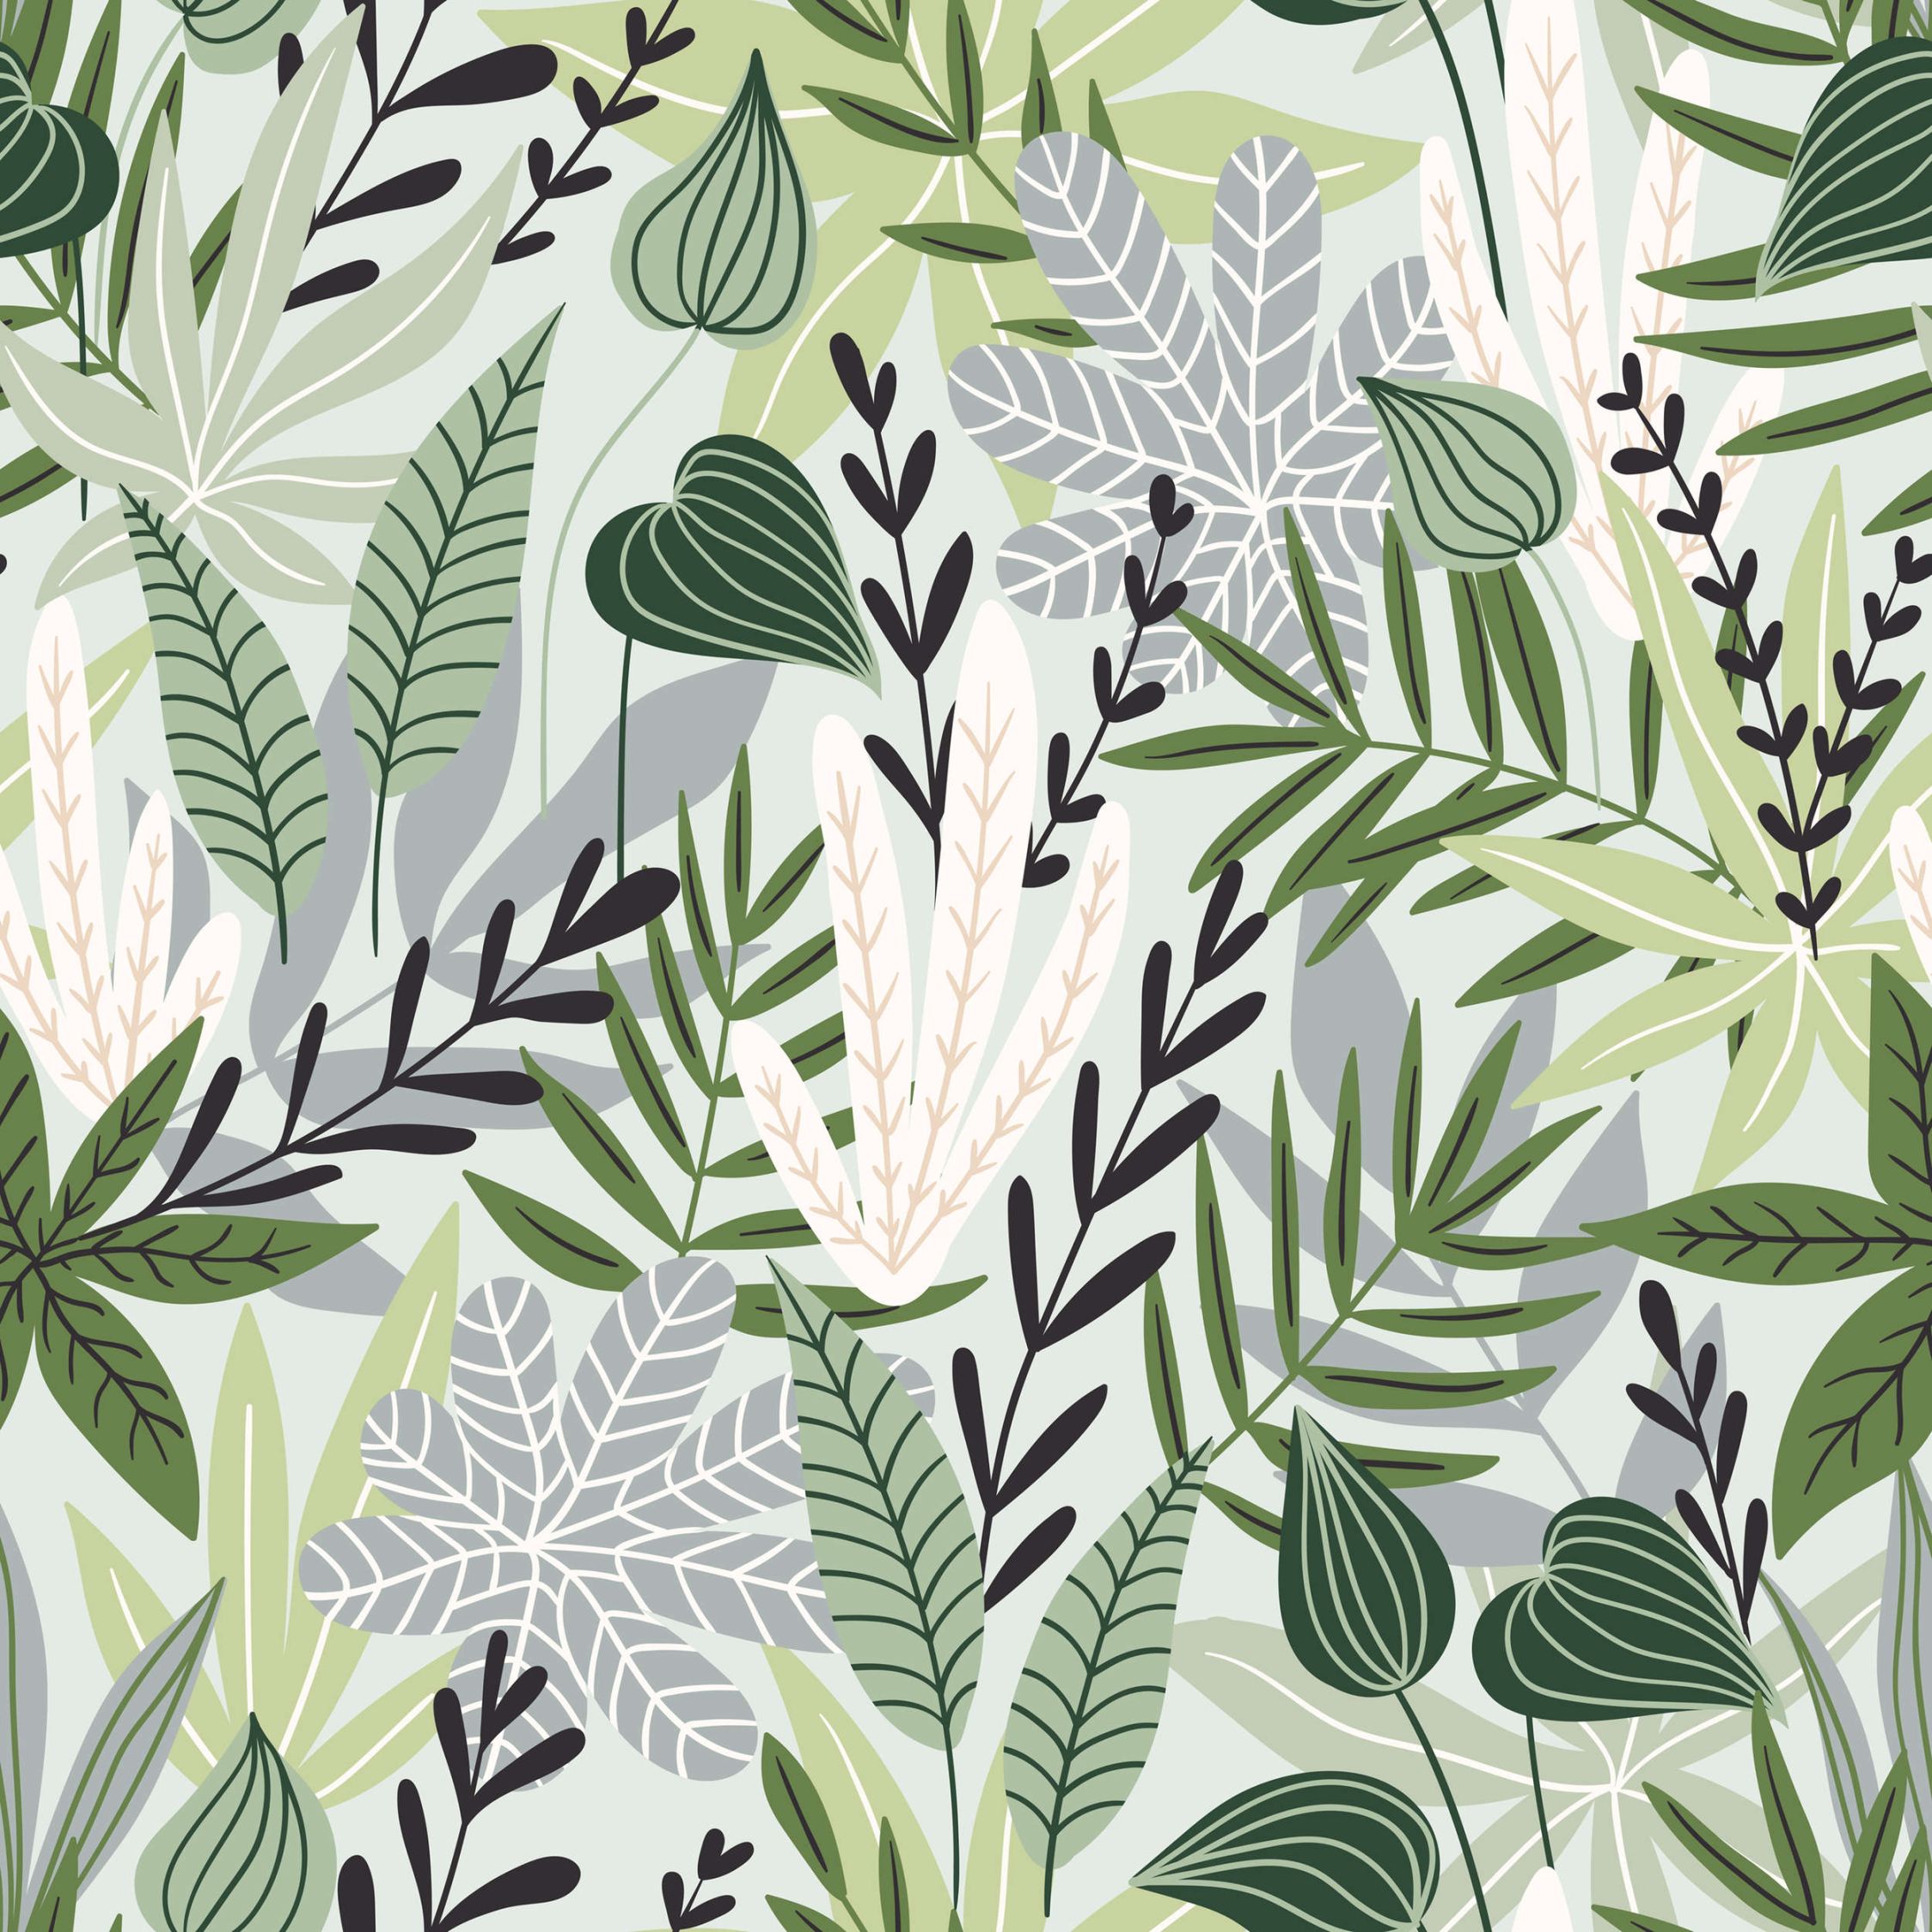             Digital behang Bladeren en grassen in komische stijl - Getextureerd vlies
        